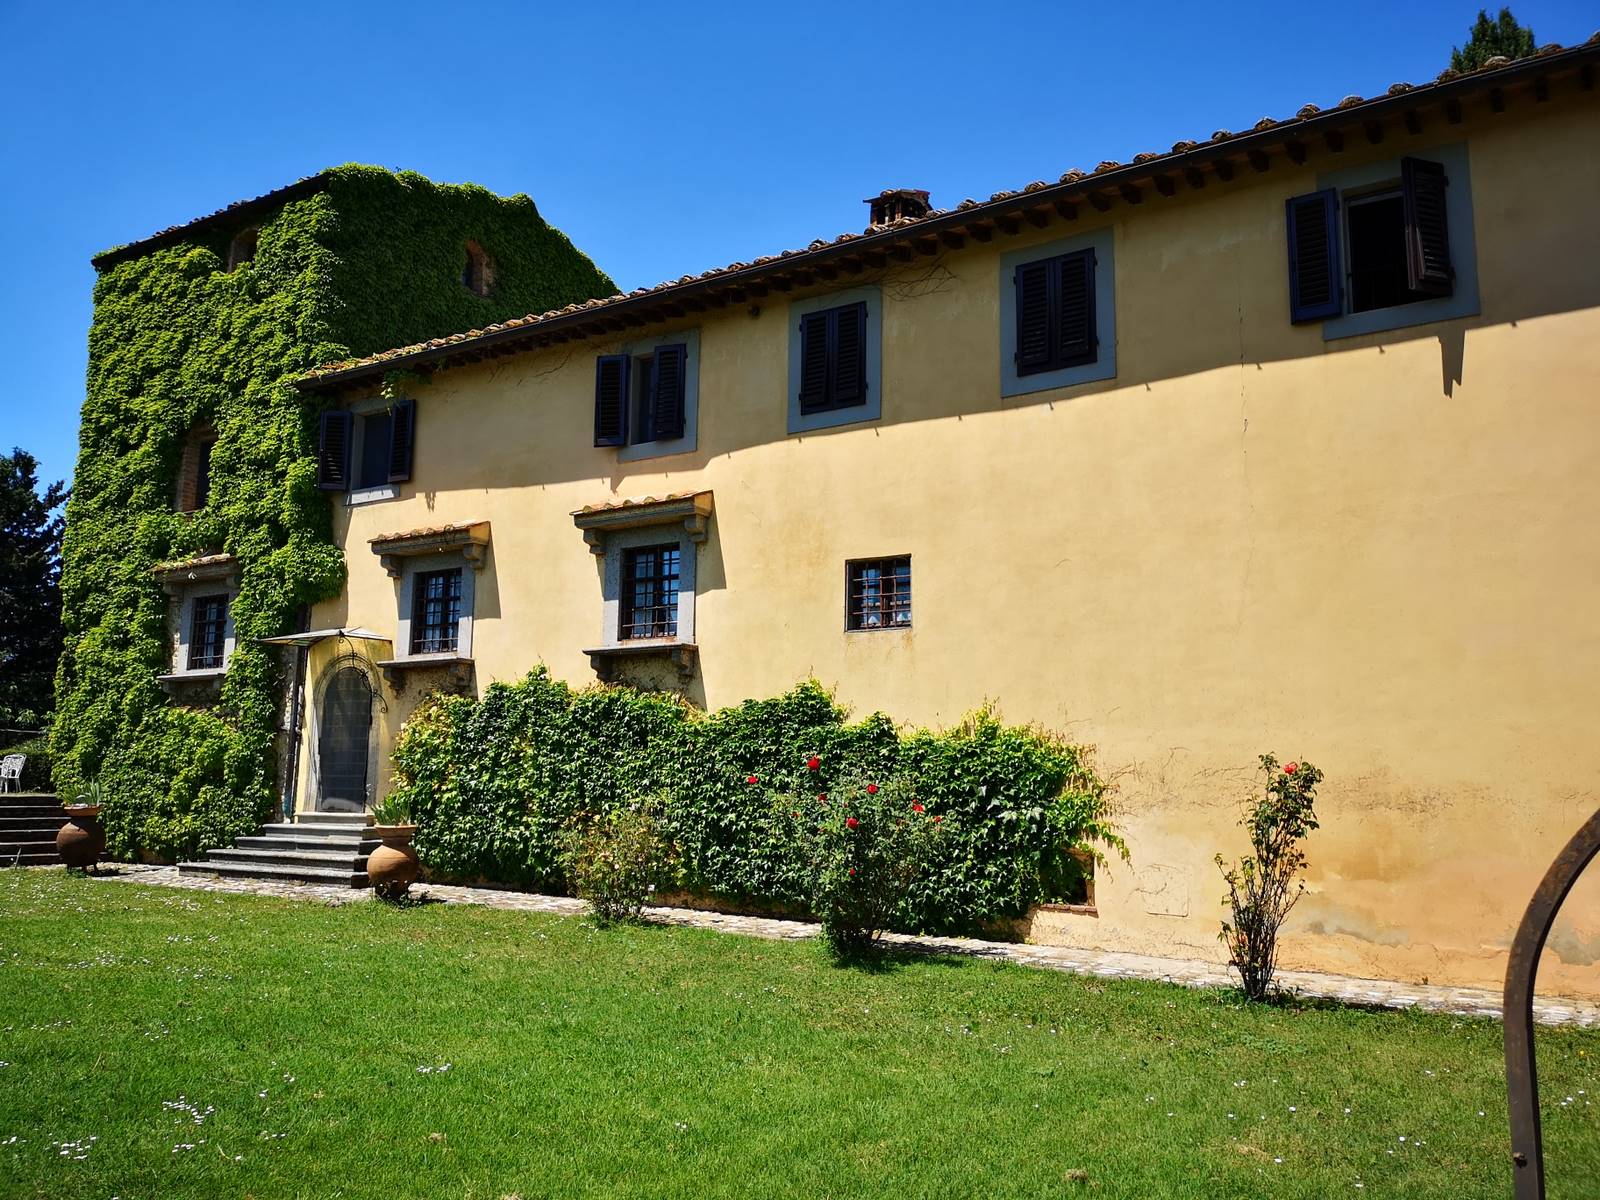 TAVARNELLE, nelle prestigiose colline del Chianti, in mezzo ai vigneti e agli olivi, bellissima proprietà, molto caratteristica, sviluppata intorno 